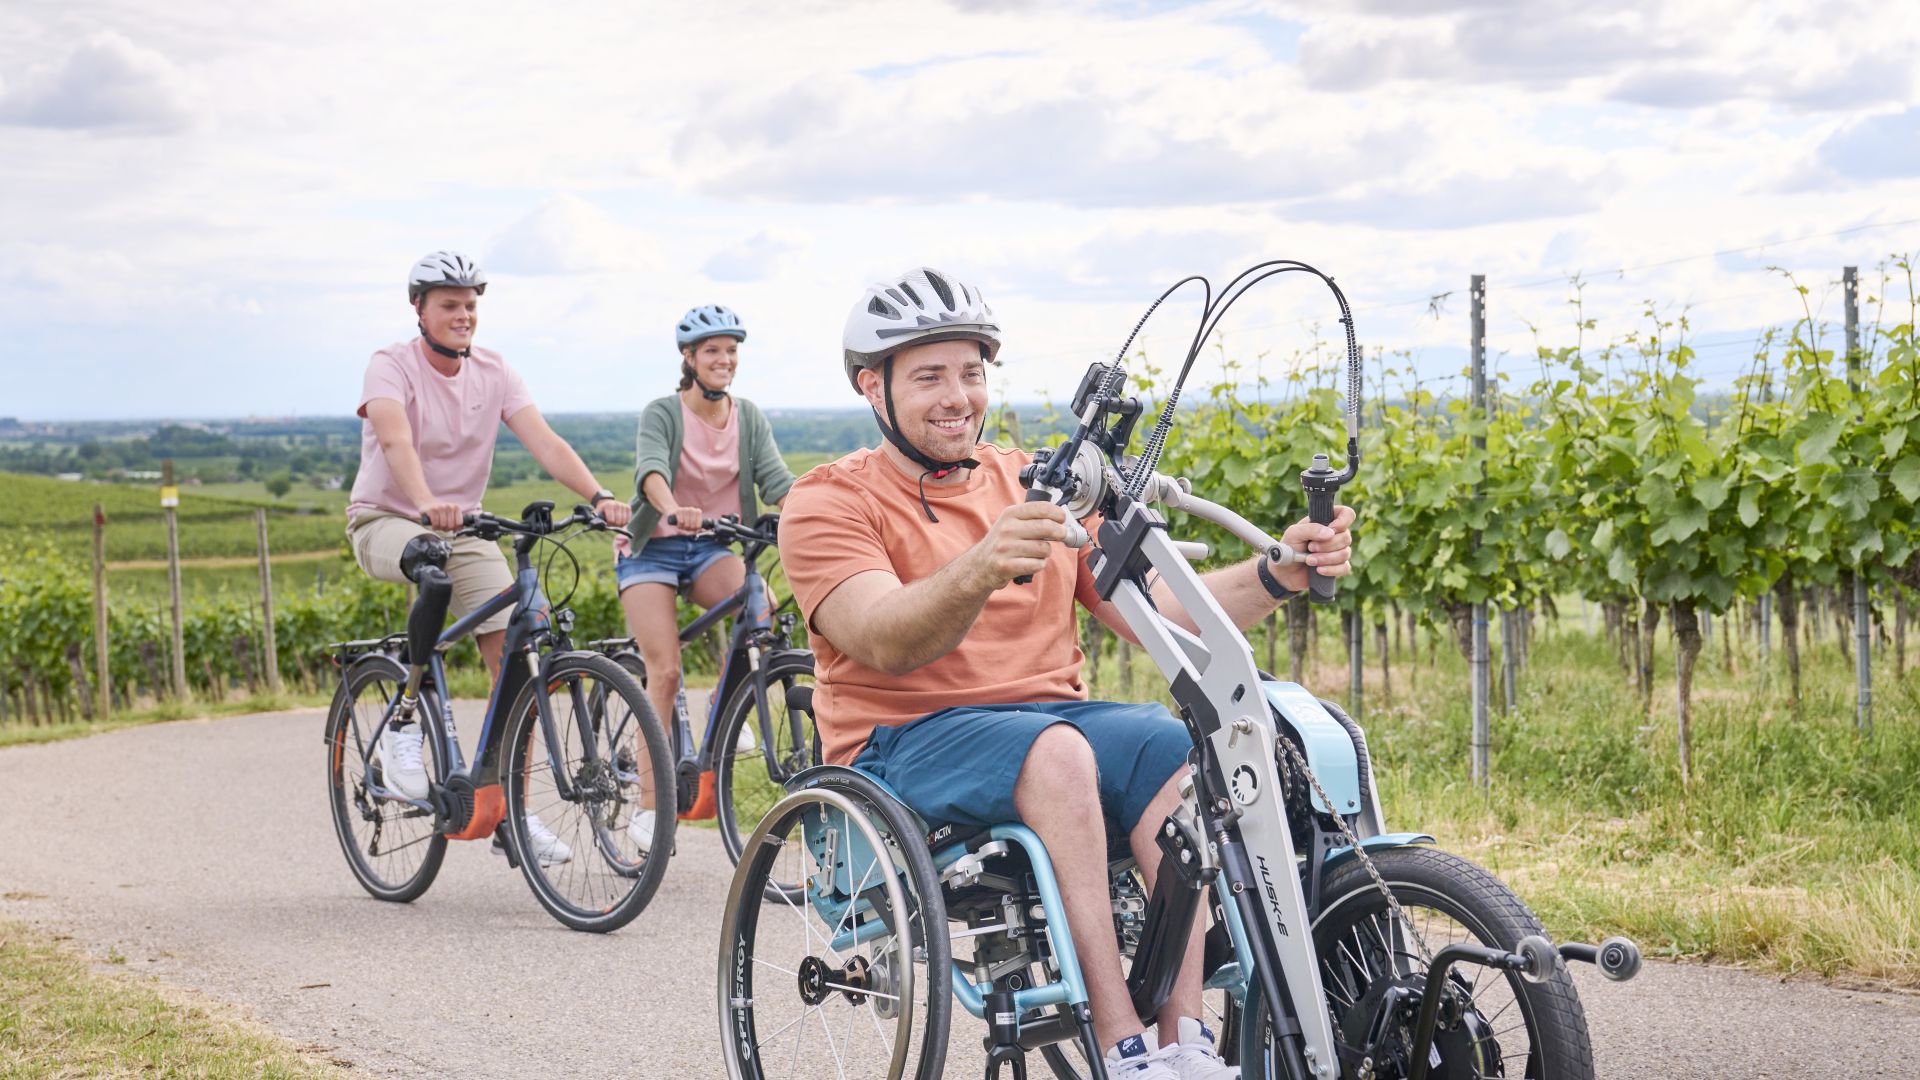 Vogtsburg: Rollstuhlfahrer und Radfahrergruppe in den Weinbergen im Hochschwarzwald